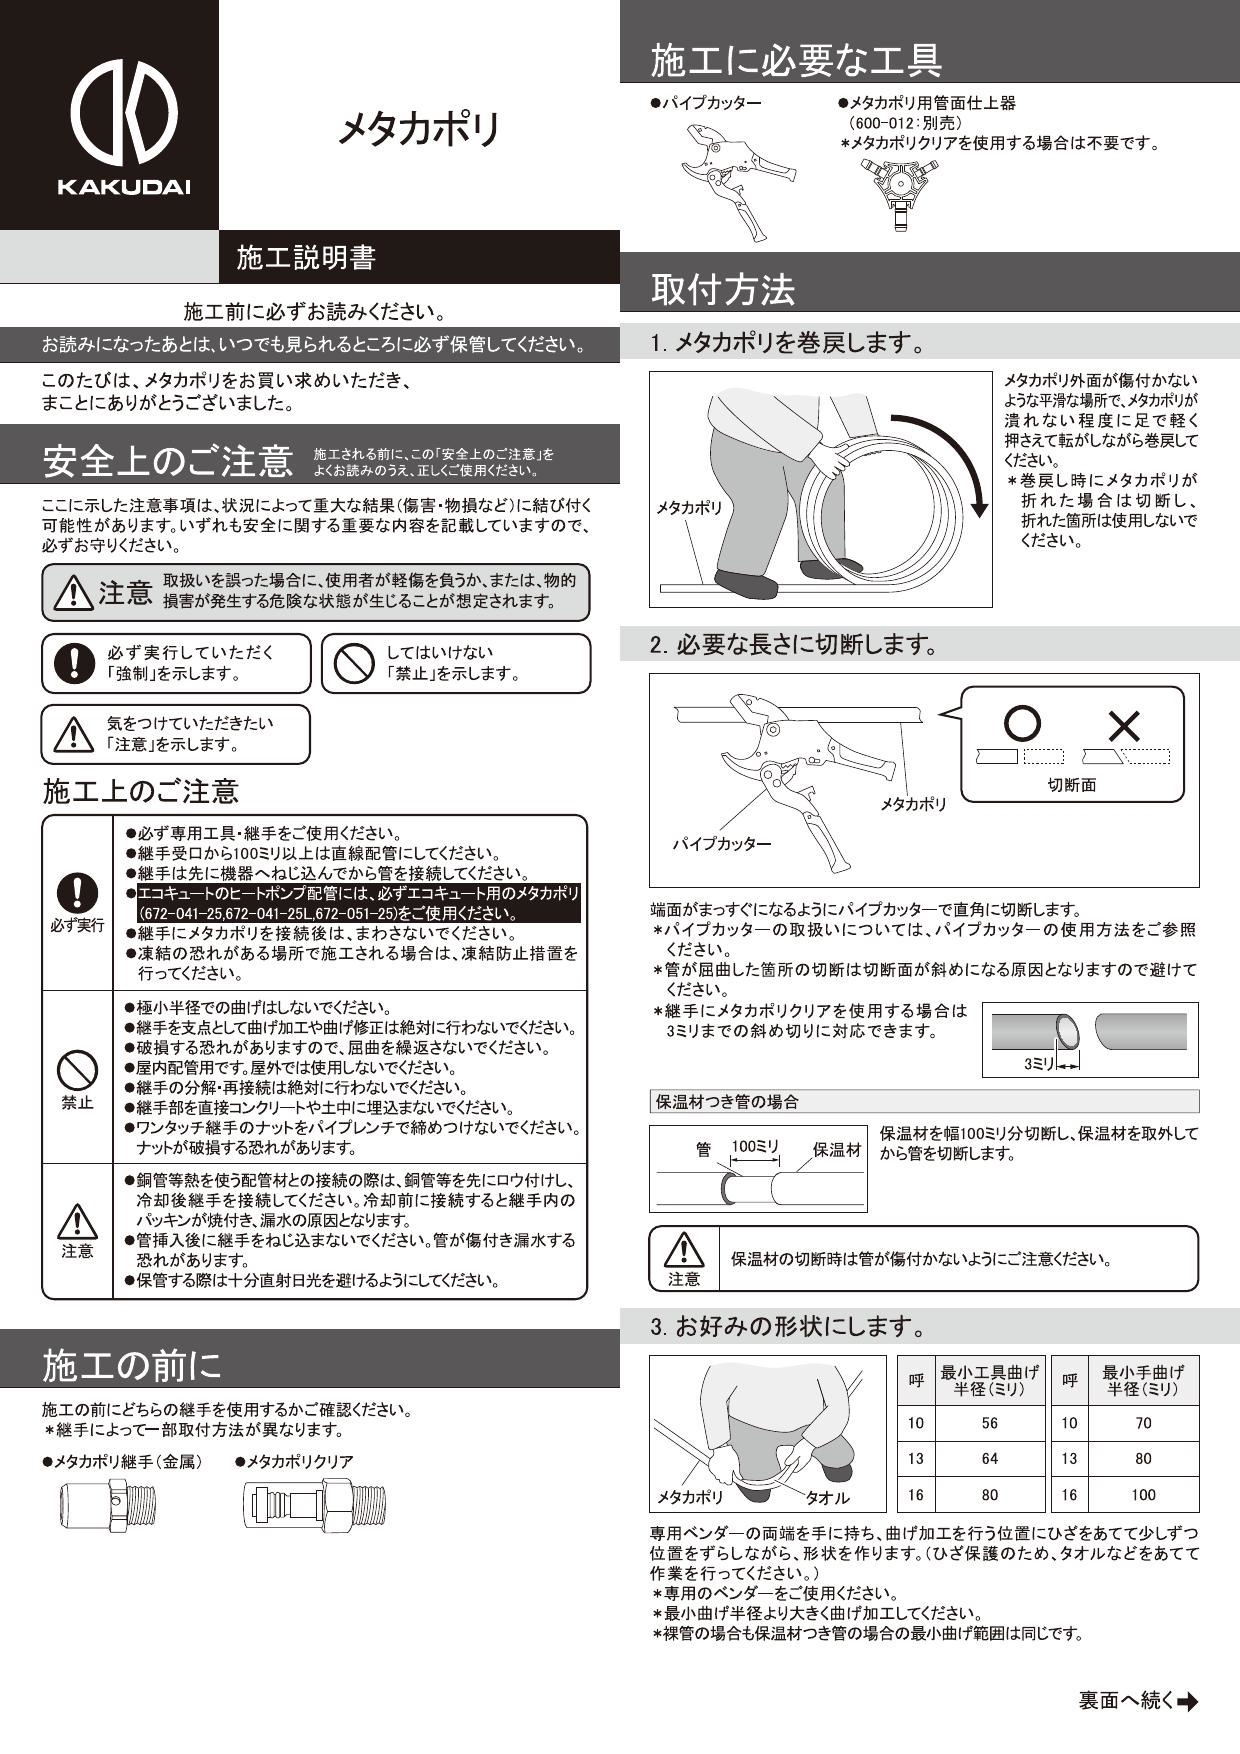 カクダイ 672-041-25 【JWWA認証品】 メタカポリ(エコキュート用)//10